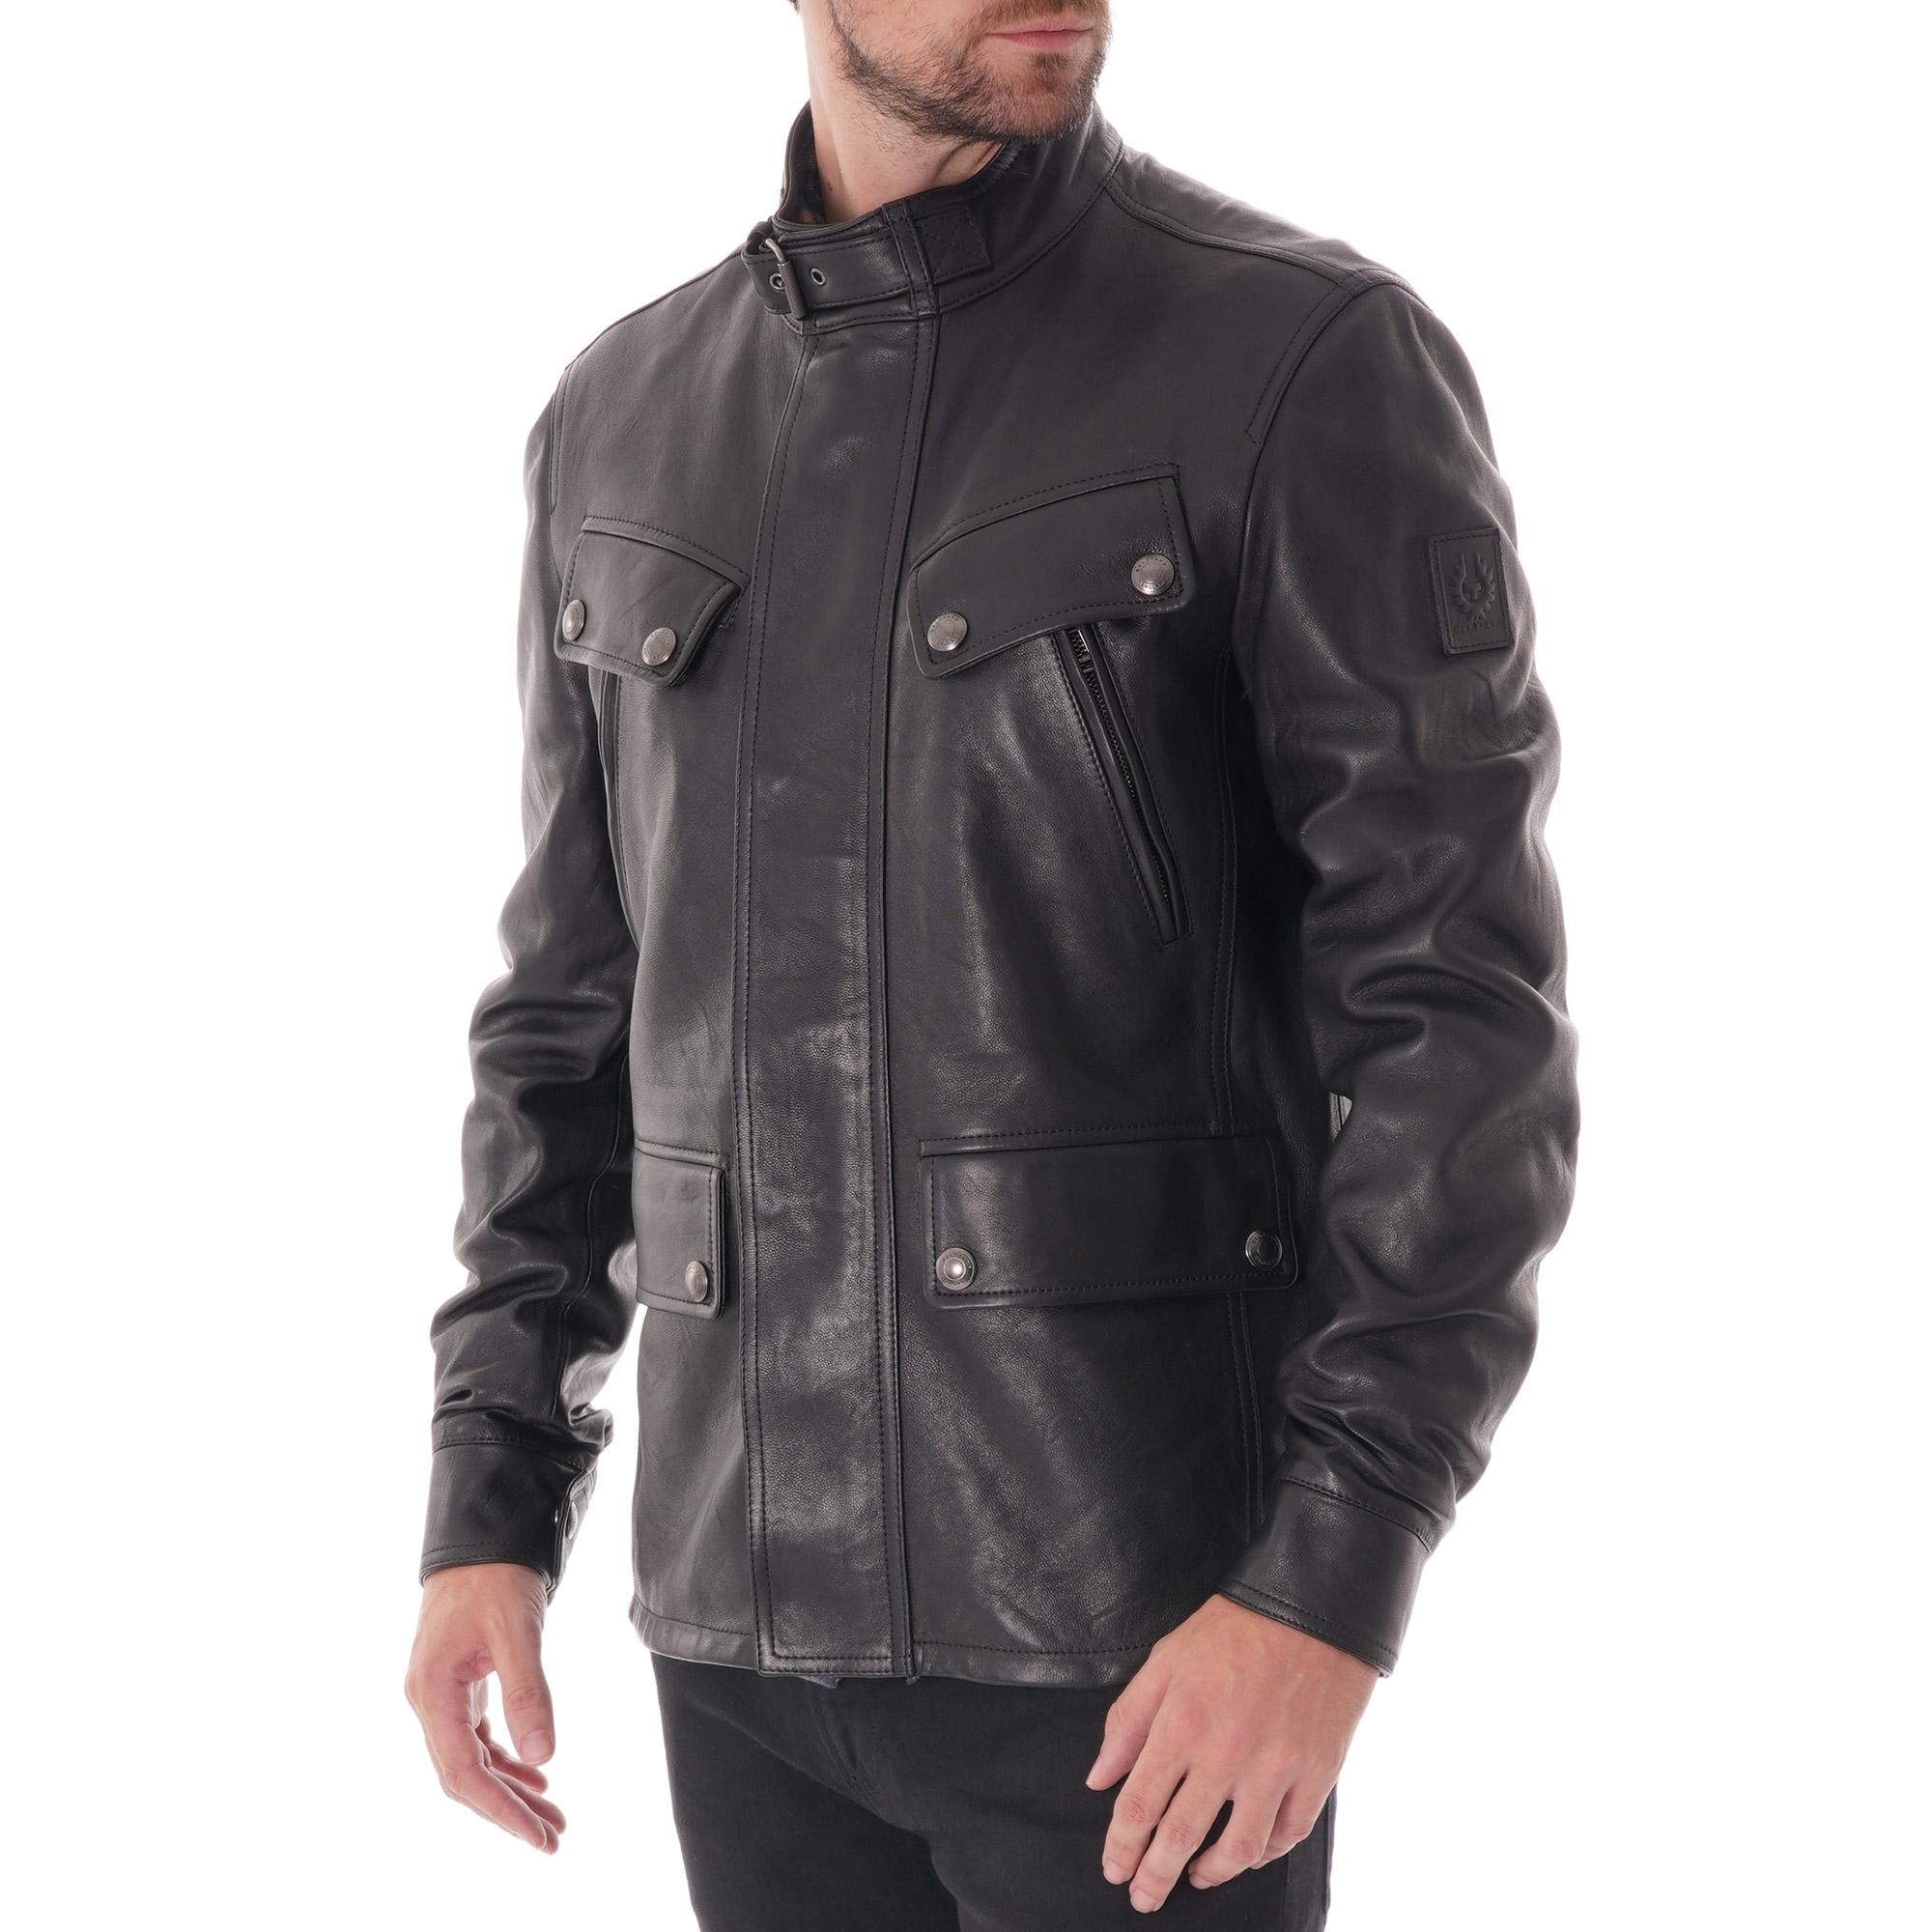 Belstaff Denesmere Leather Jacket in Vintage Black (Black) for Men - Lyst